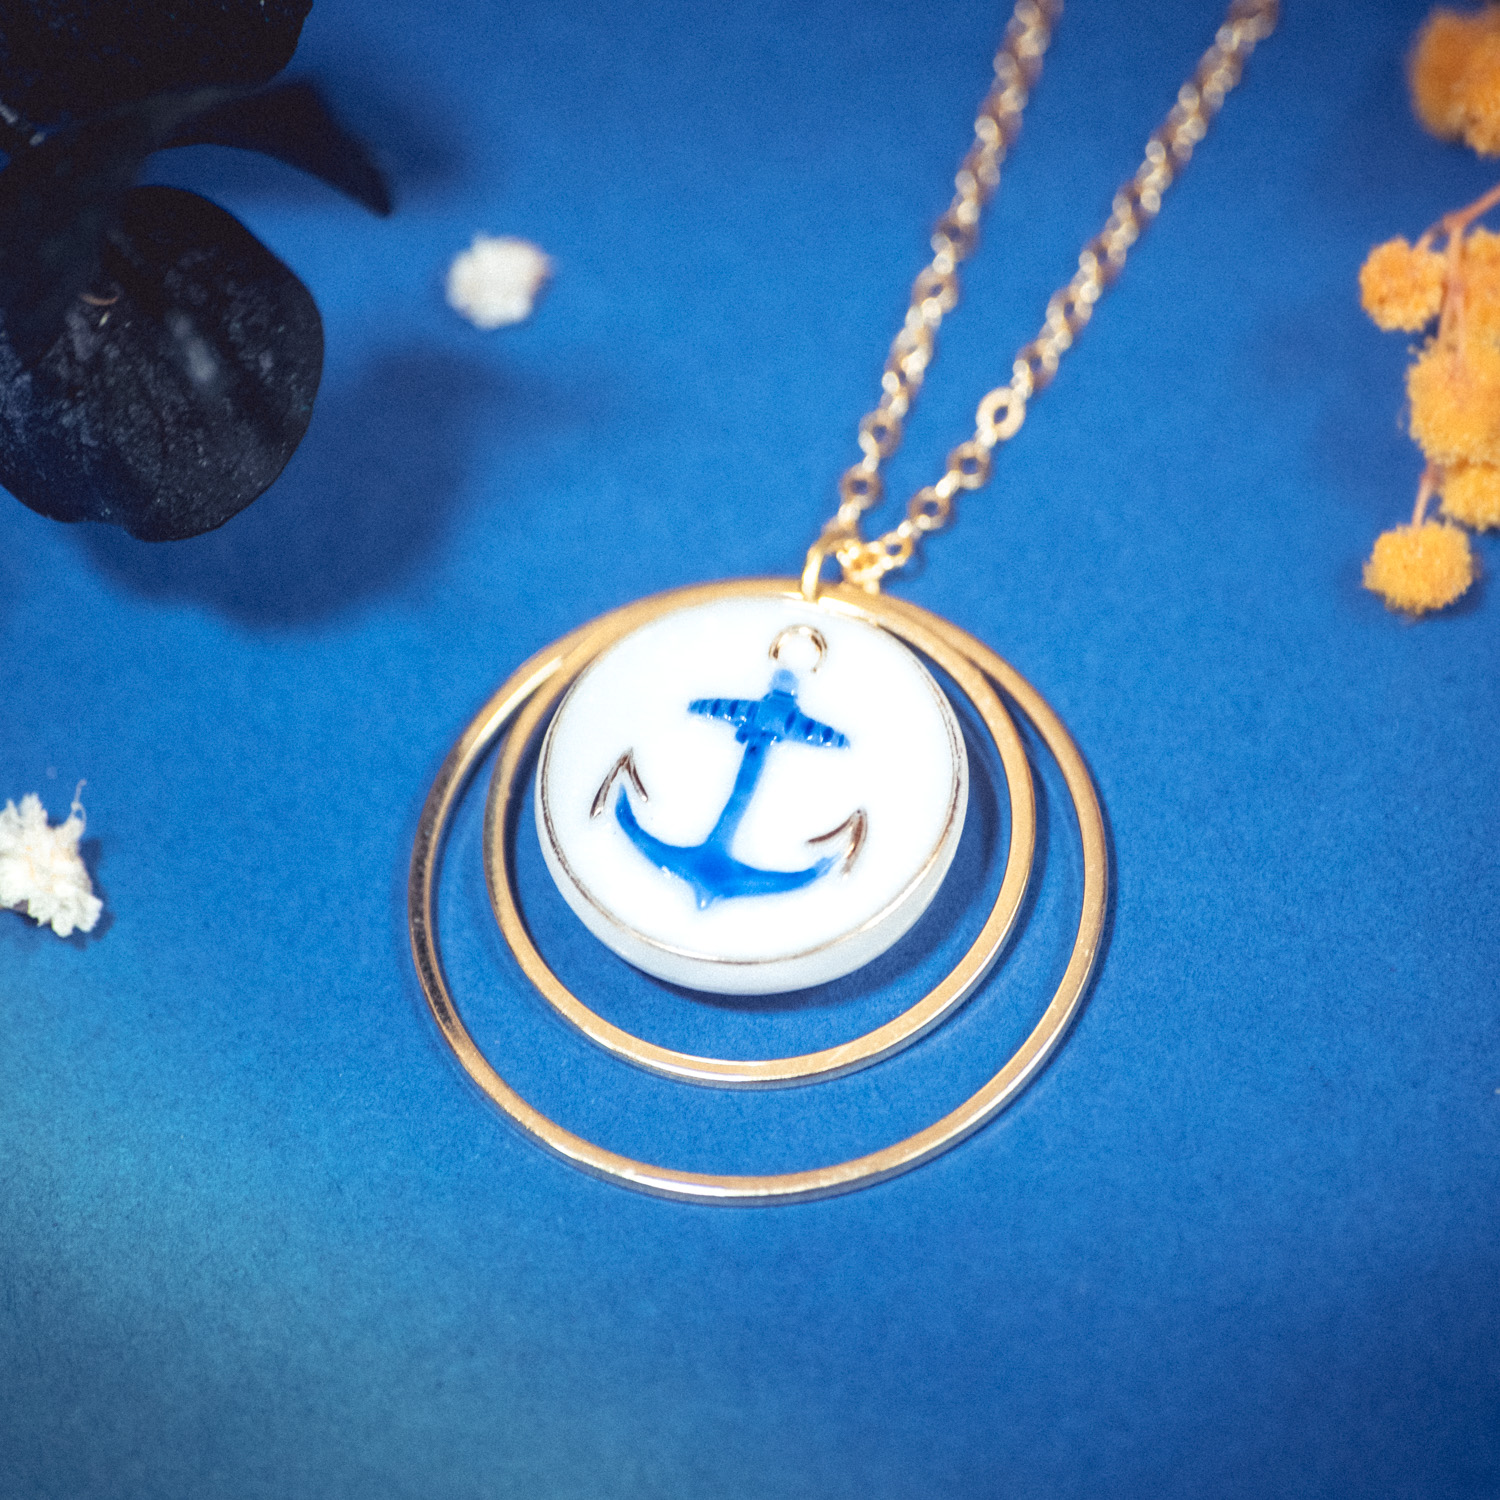 Assuna – Collier Lunare Marine – bouton ancien 1940 – collier d’inspiration vintage en forme de croissant de lune